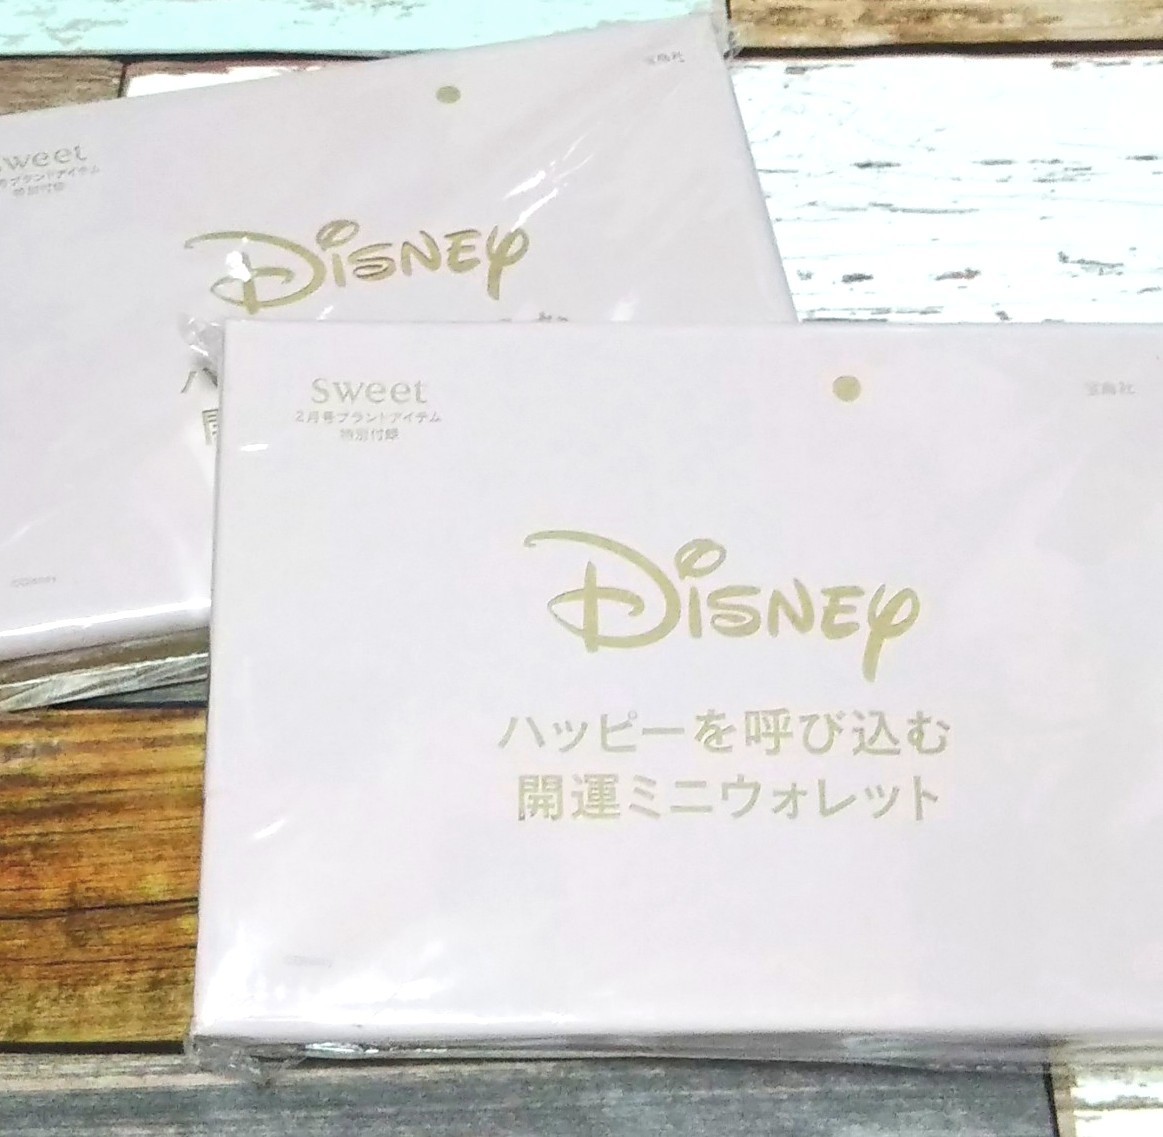 sweet付録 Disney ハッピーを呼び込む開運ミニウォレット 2箱  ミニーマウス ミッキーマウス 未開封発送